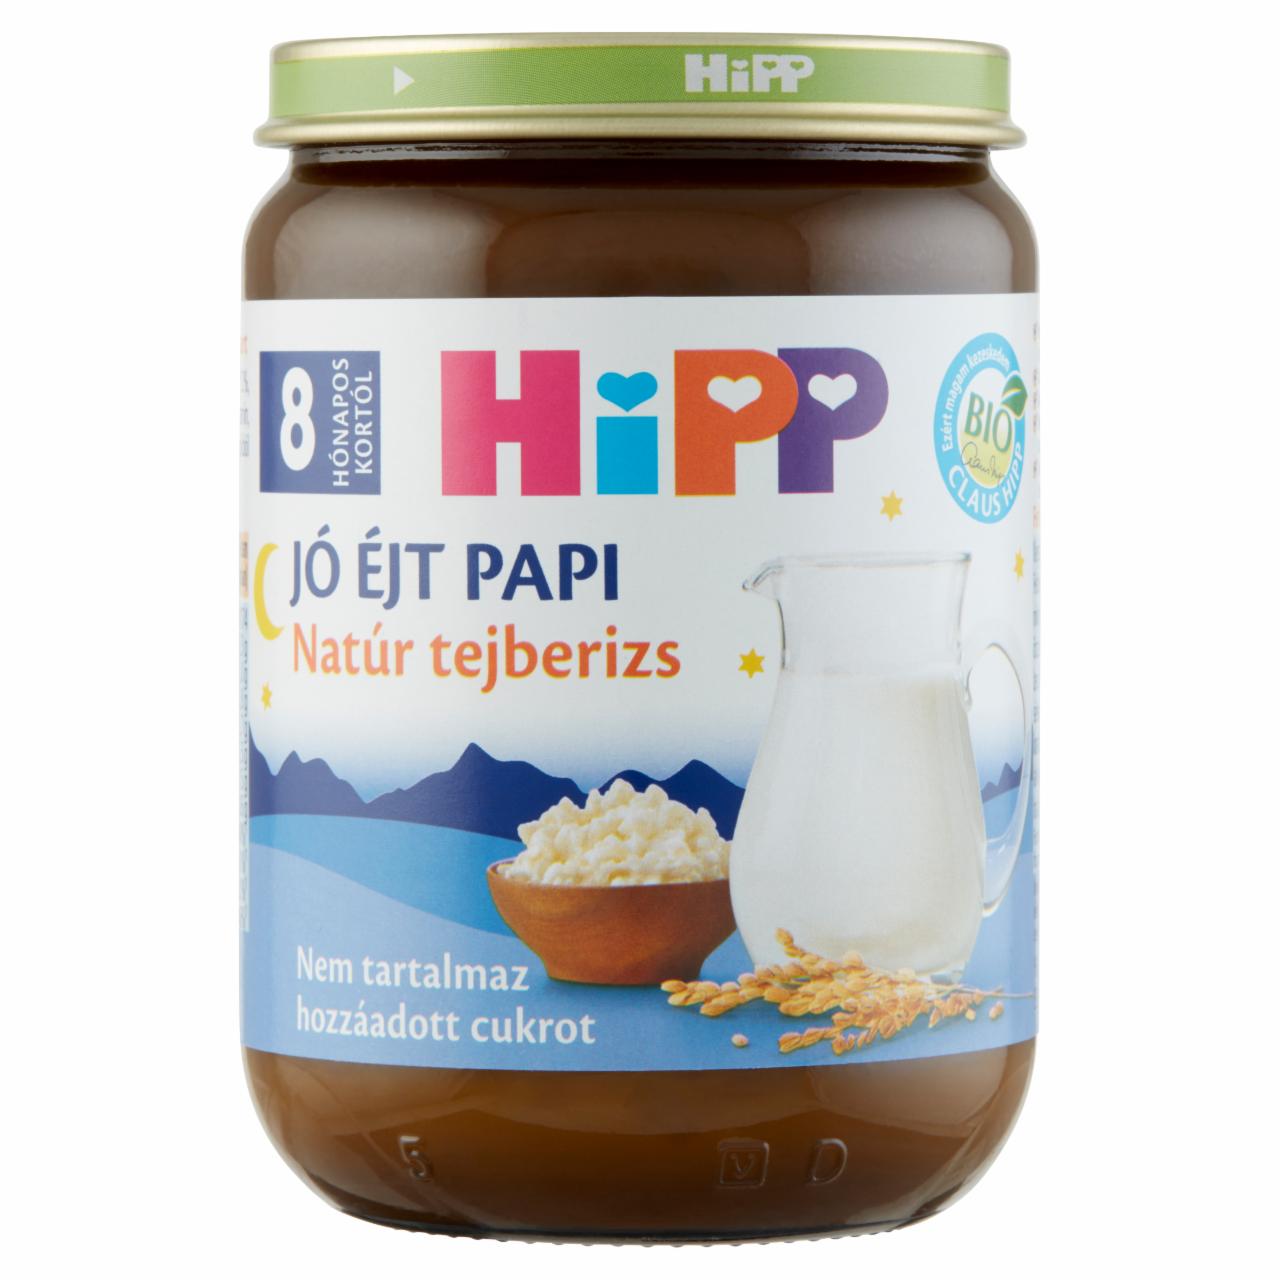 Képek - HiPP Jó Éjt Papi BIO natúr tejberizs bébidesszert 8 hónapos kortól 190 g